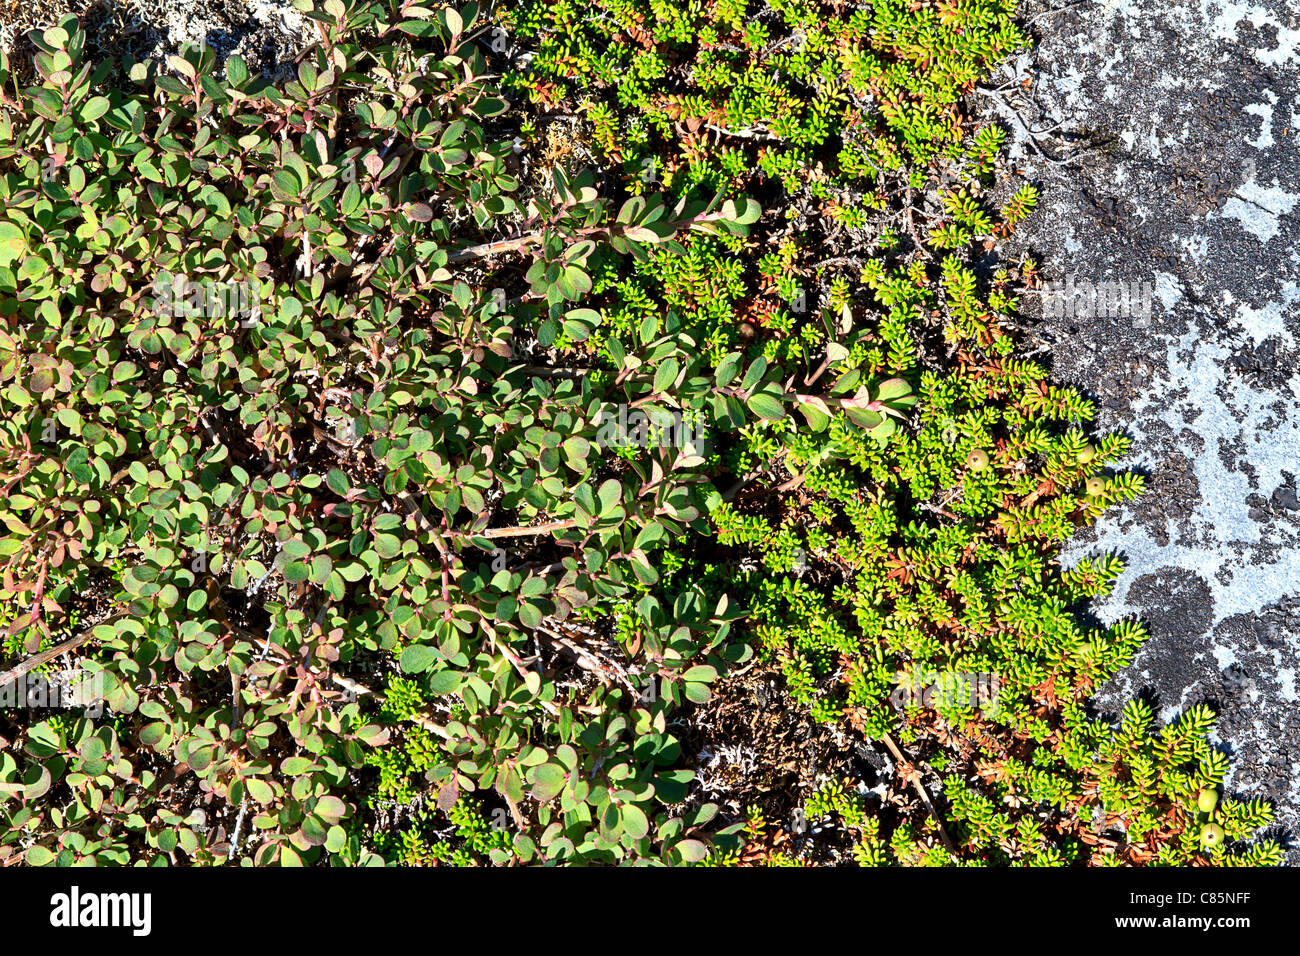 Arktische Heidelbeere (Vaccinium Uliginosum) wachsenden Pflanzen neben Krähenbeere (Empetrum Nigrum). Stockfoto